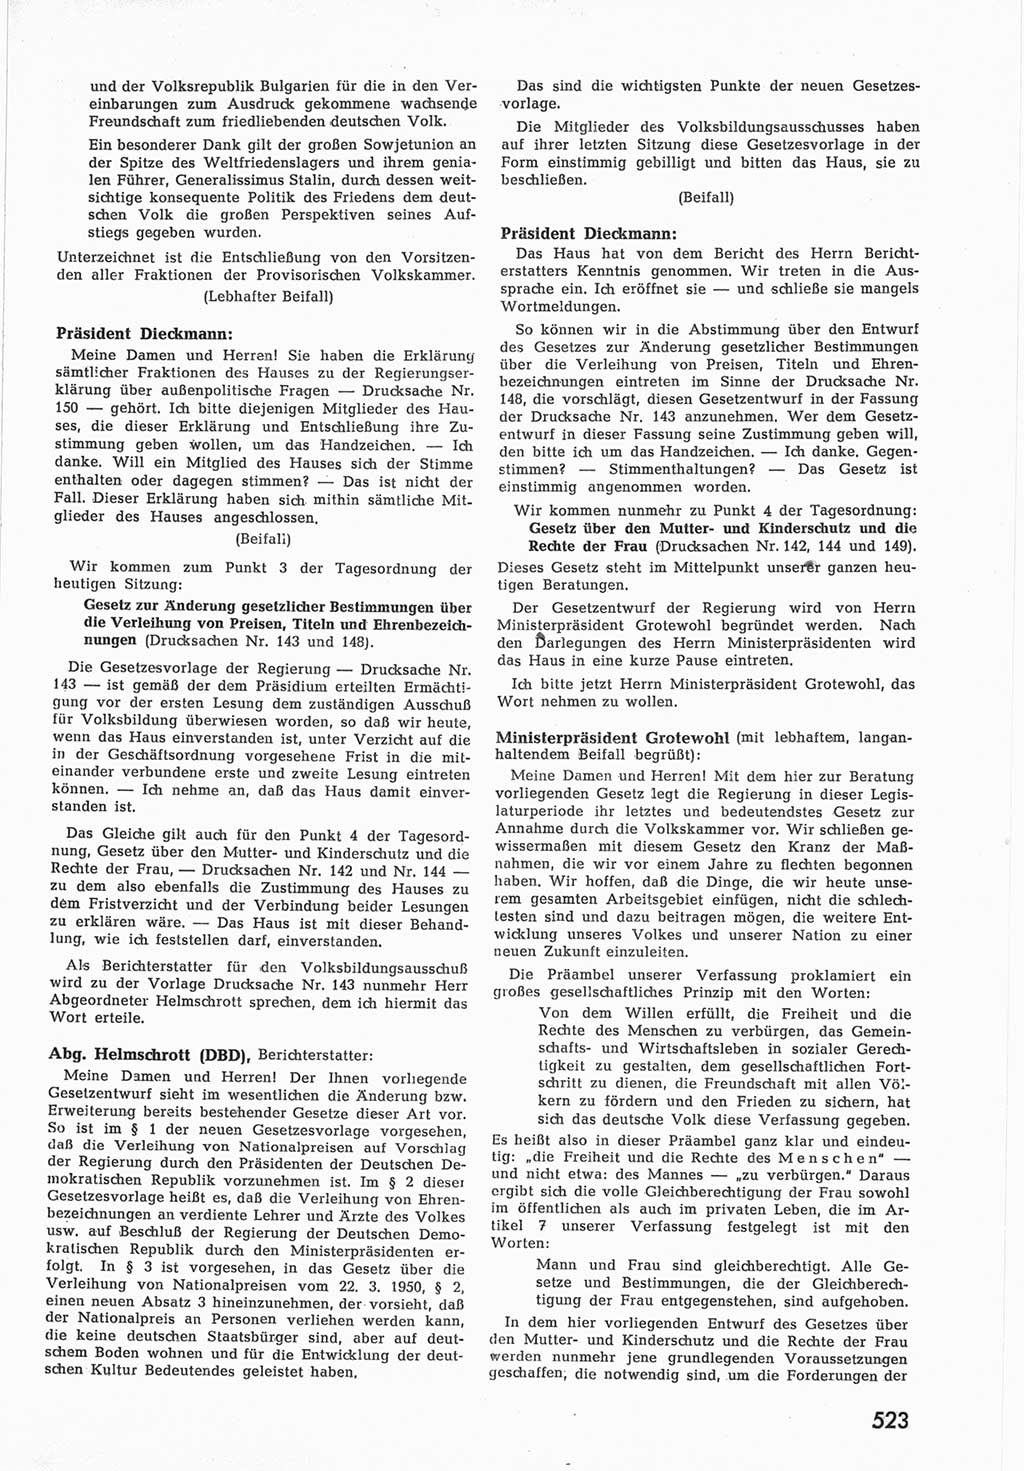 Provisorische Volkskammer (VK) der Deutschen Demokratischen Republik (DDR) 1949-1950, Dokument 541 (Prov. VK DDR 1949-1950, Dok. 541)